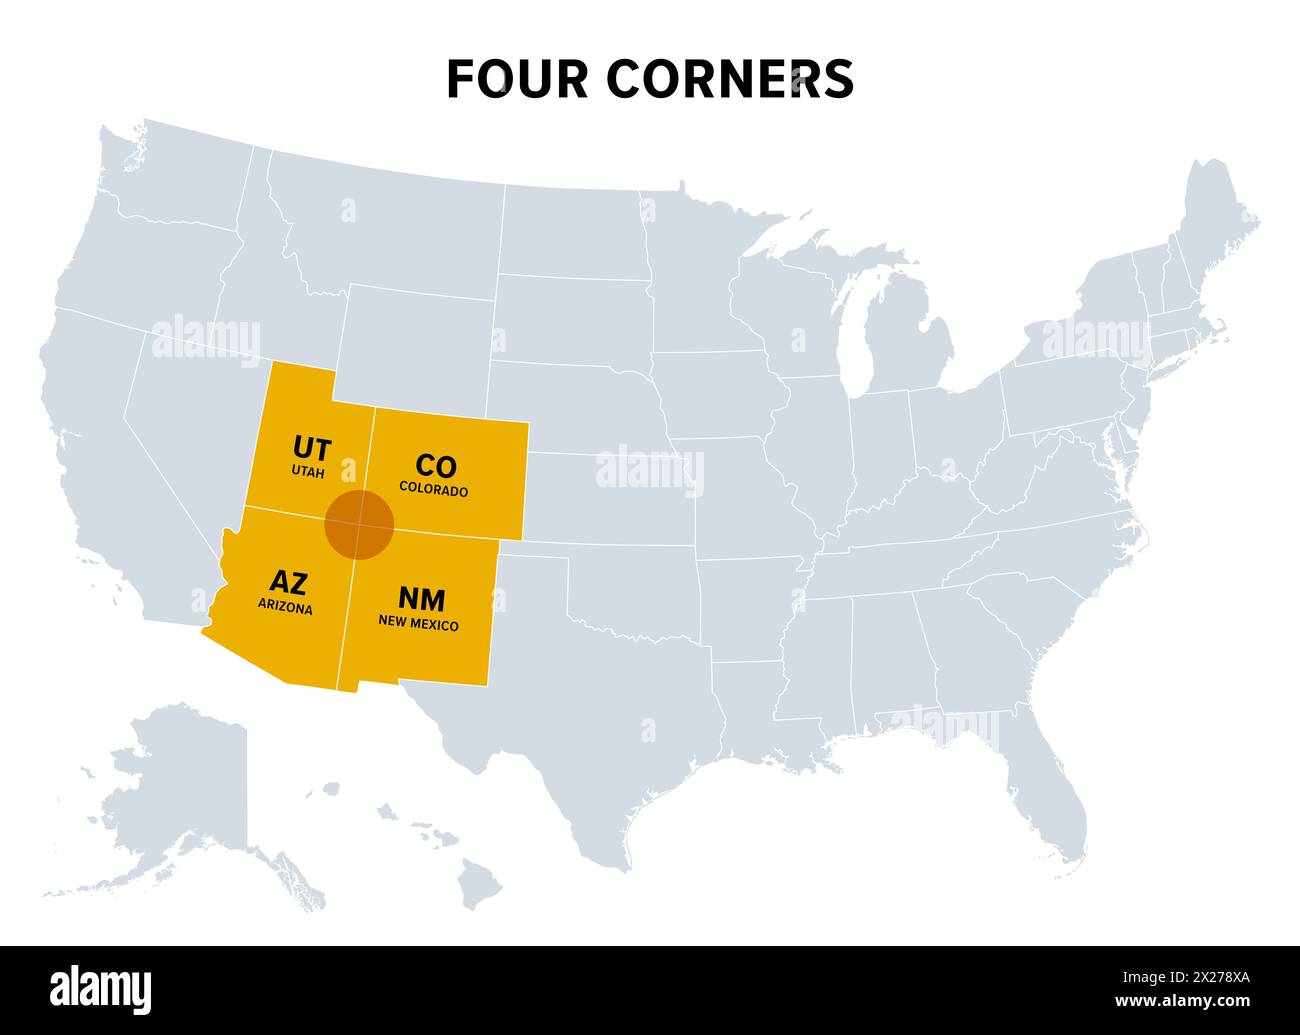 Four Corners, eine Region im Südwesten der Vereinigten Staaten, politische Karte. Nur Region in den Vereinigten staaten, in der vier staaten einen Grenzpunkt teilen. Stockfoto